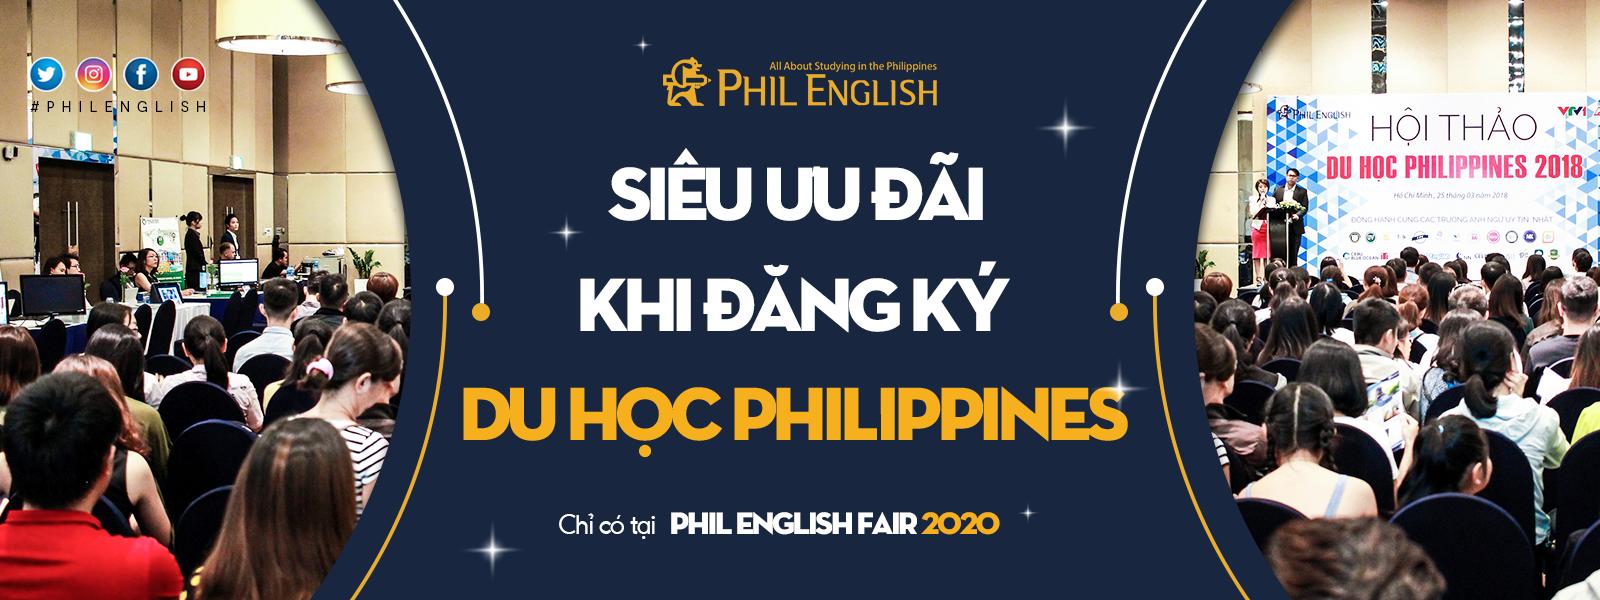 Chỉ có tại Phil English Fair 2020: Siêu ưu đãi khi đăng ký du học Philippines!